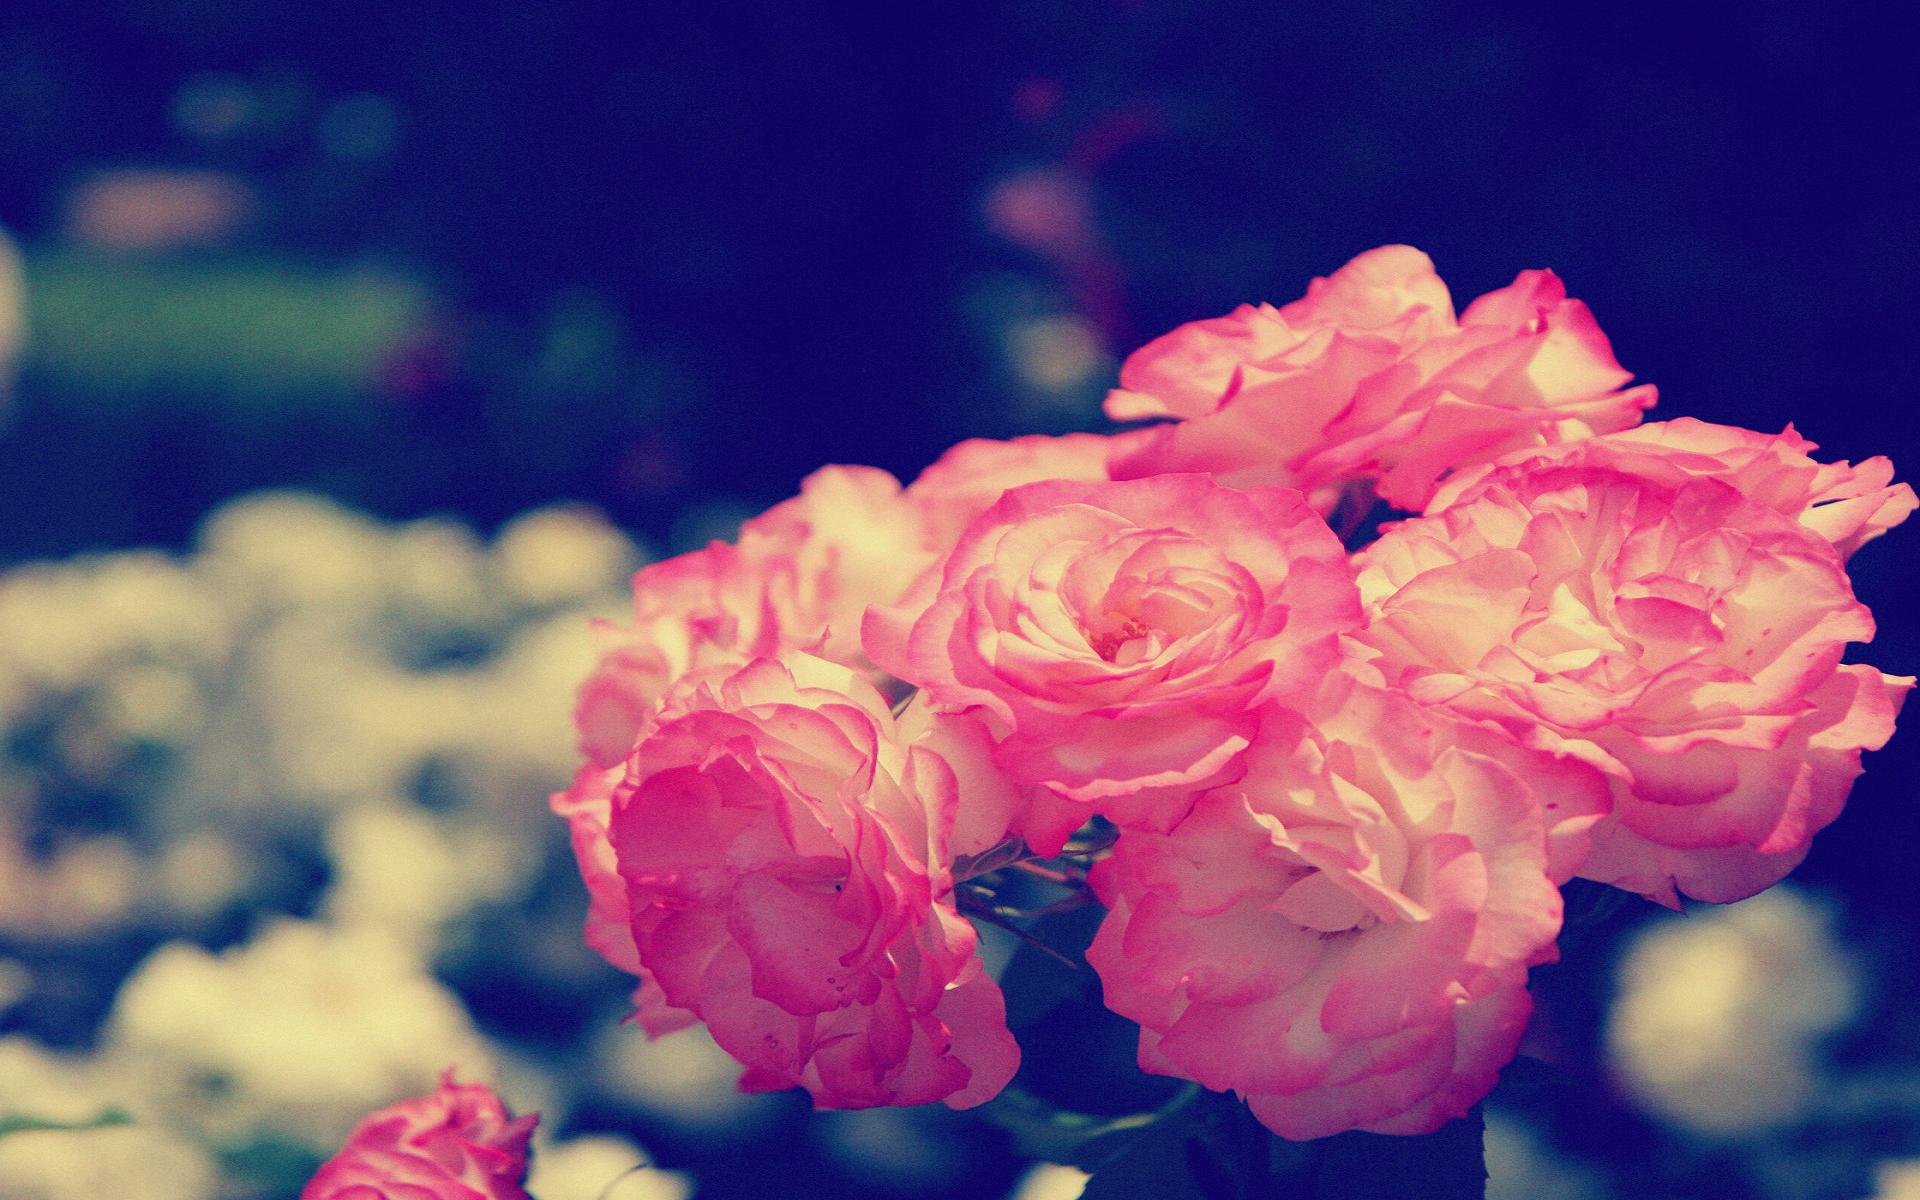 عکس های فوق العاده زیبا از قشنگ ترین گل های جهان